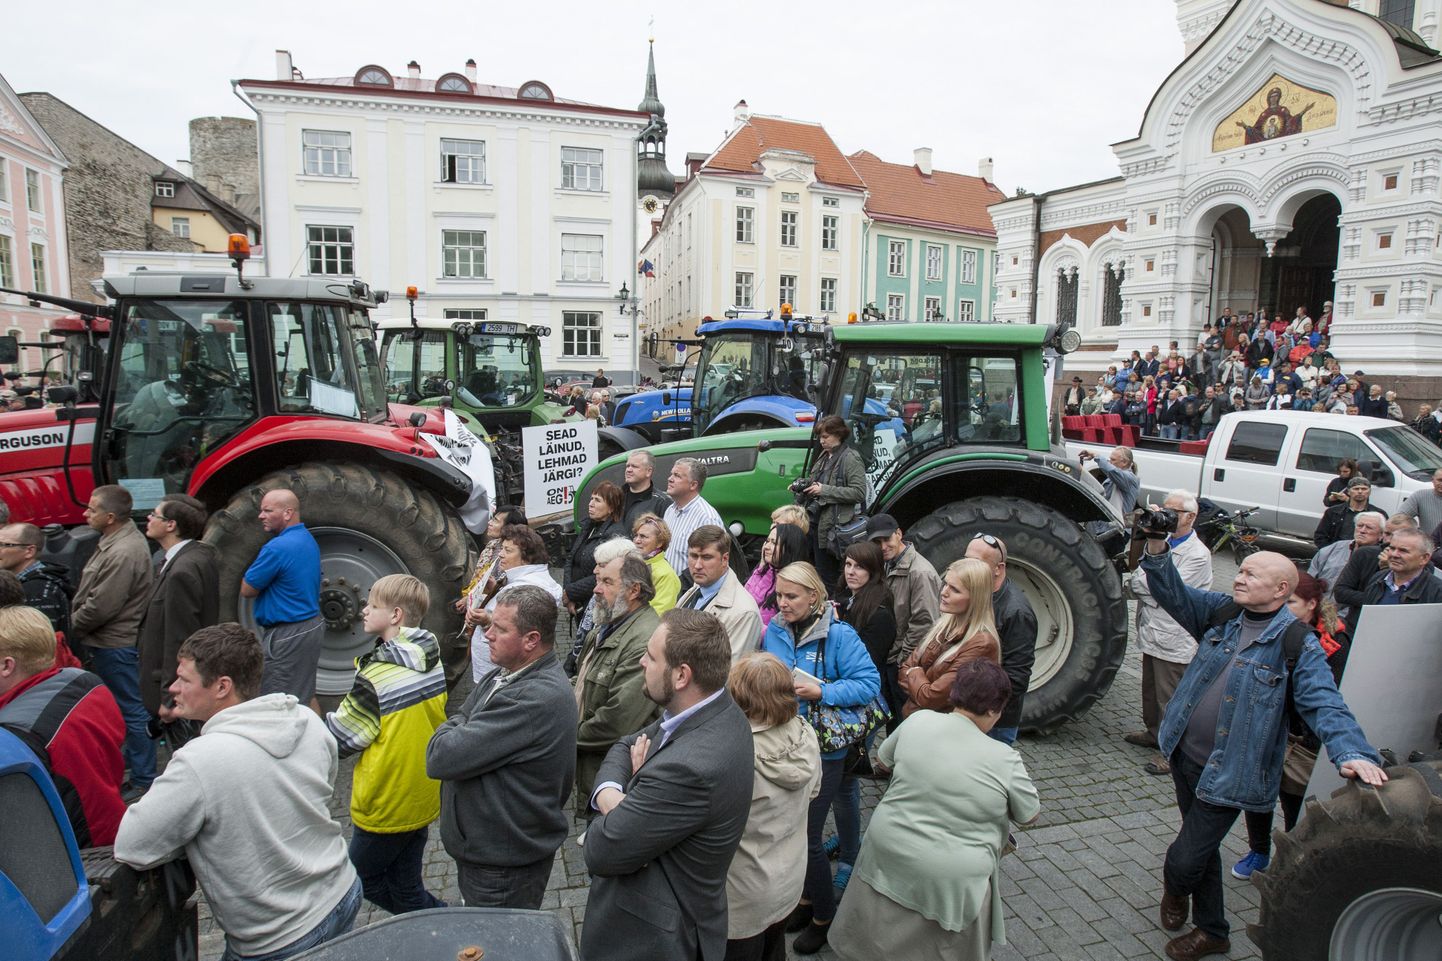 Möödunud aasta septembris sõitsid põllumehed Toompeale meelt avaldama 101 traktoriga ja kohal oli sadu inimesi.